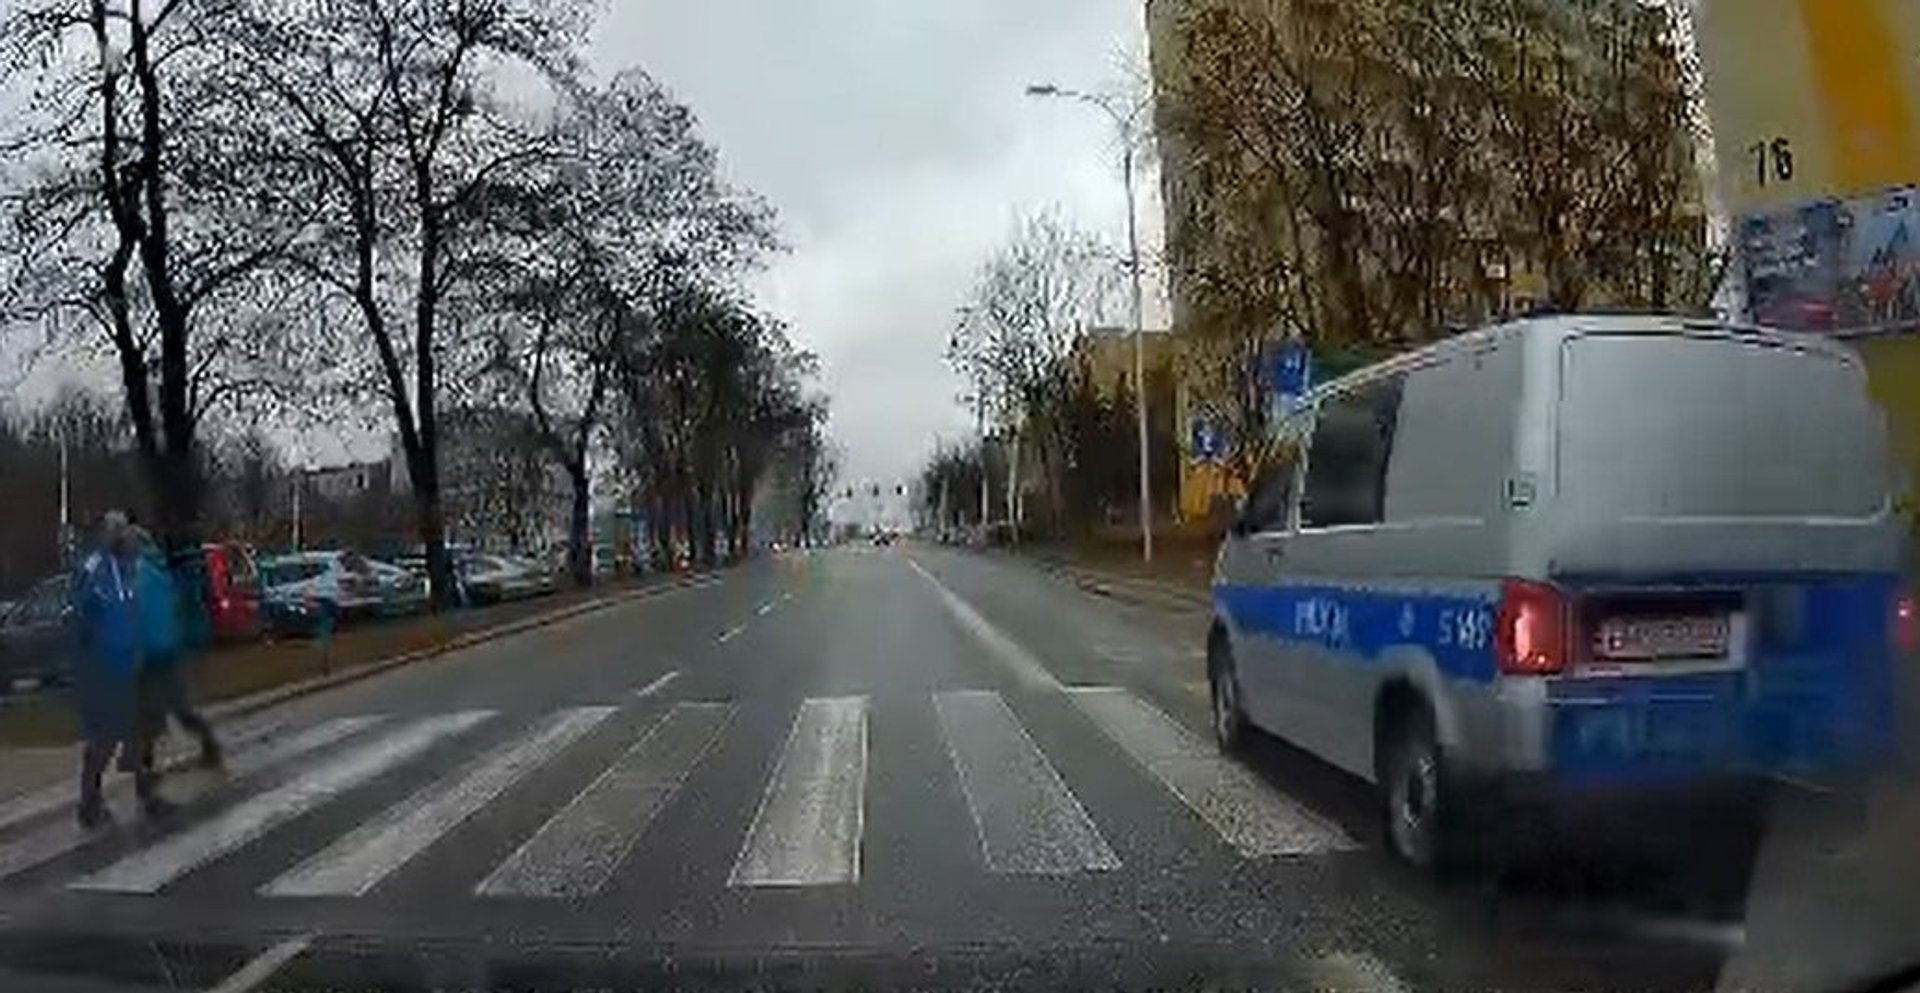 Kierowca radiowozu wyprzedzał na przejściu dla pieszych